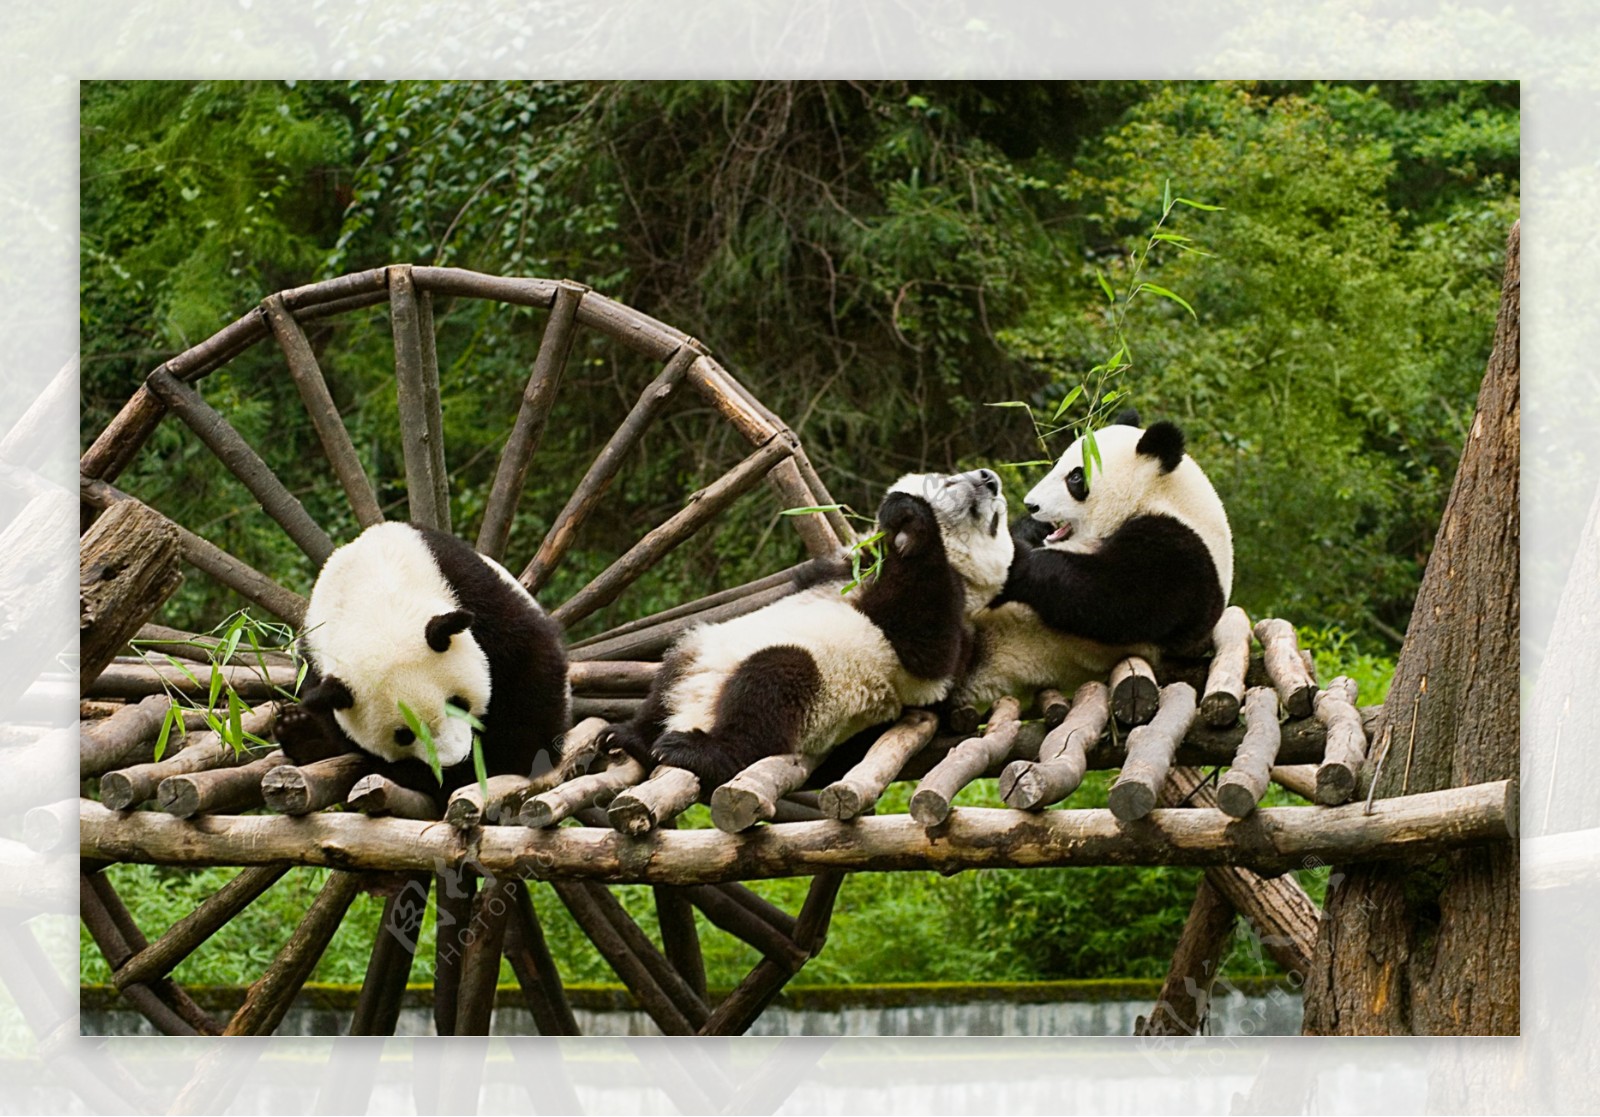 动物园熊猫图片